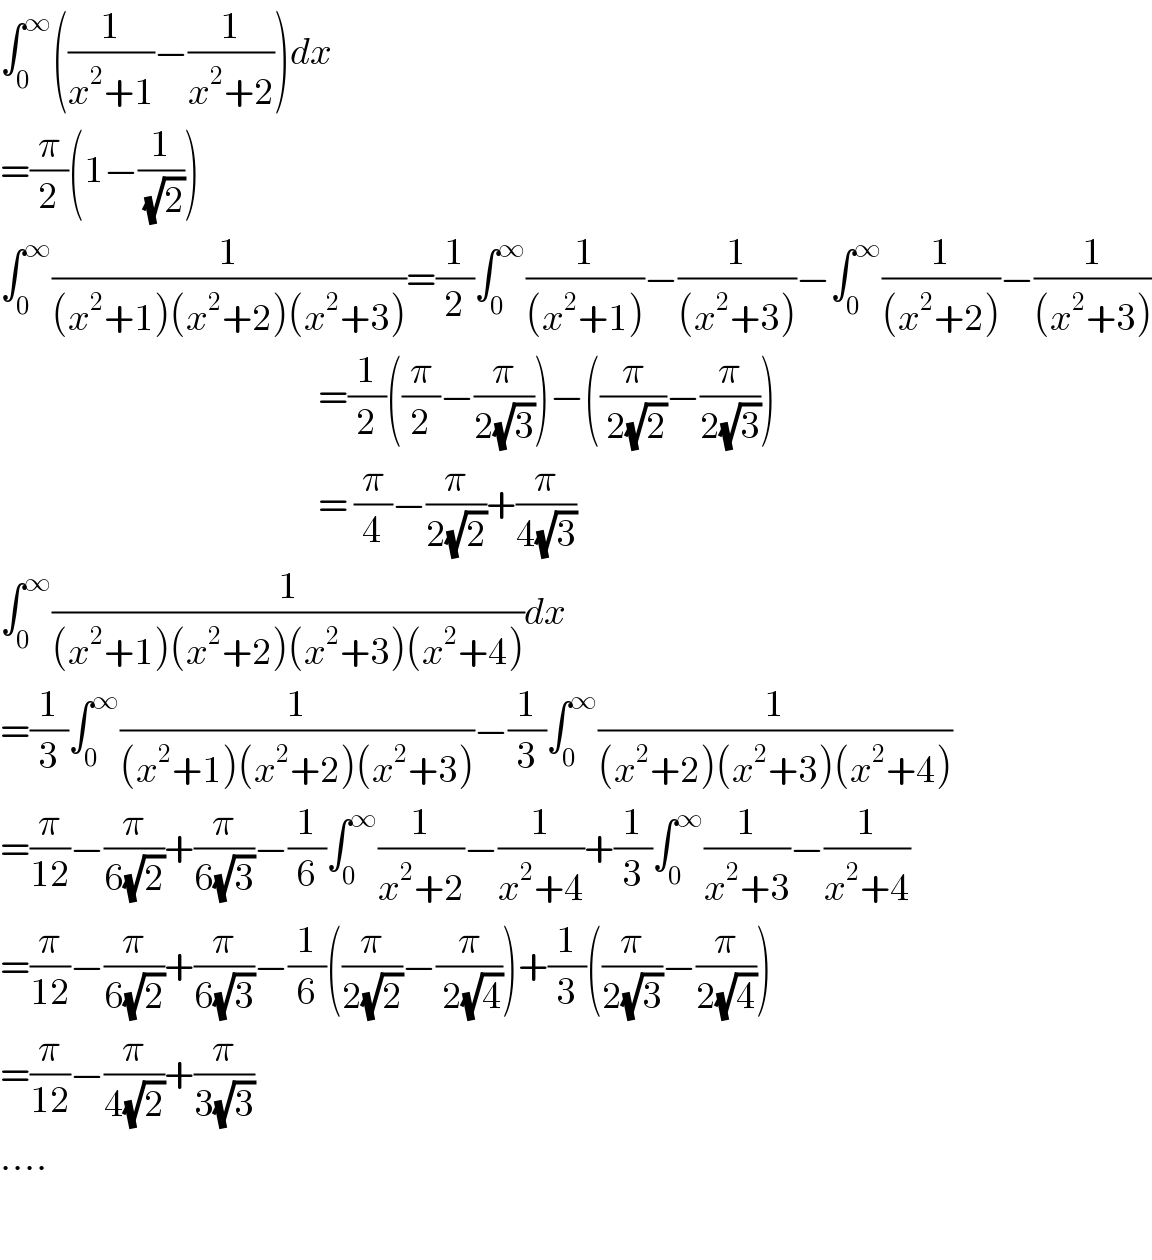 ∫_0 ^∞ ((1/(x^2 +1))−(1/(x^2 +2)))dx  =(π/2)(1−(1/( (√2))))  ∫_0 ^∞ (1/((x^2 +1)(x^2 +2)(x^2 +3)))=(1/2)∫_0 ^∞ (1/((x^2 +1)))−(1/((x^2 +3)))−∫_0 ^∞ (1/((x^2 +2)))−(1/((x^2 +3)))                                                       =(1/2)((π/2)−(π/(2(√3))))−((π/( 2(√2)))−(π/(2(√3))))                                                       = (π/4)−(π/(2(√2)))+(π/(4(√3)))  ∫_0 ^∞ (1/((x^2 +1)(x^2 +2)(x^2 +3)(x^2 +4)))dx  =(1/3)∫_0 ^∞ (1/((x^2 +1)(x^2 +2)(x^2 +3)))−(1/3)∫_0 ^∞ (1/((x^2 +2)(x^2 +3)(x^2 +4)))  =(π/(12))−(π/(6(√2)))+(π/(6(√3)))−(1/6)∫_0 ^∞ (1/(x^2 +2))−(1/(x^2 +4))+(1/3)∫_0 ^∞ (1/(x^2 +3))−(1/(x^2 +4))  =(π/(12))−(π/(6(√2)))+(π/(6(√3)))−(1/6)((π/(2(√2)))−(π/( 2(√4))))+(1/3)((π/(2(√3)))−(π/(2(√4))))  =(π/(12))−(π/(4(√2)))+(π/(3(√3)))  ....    